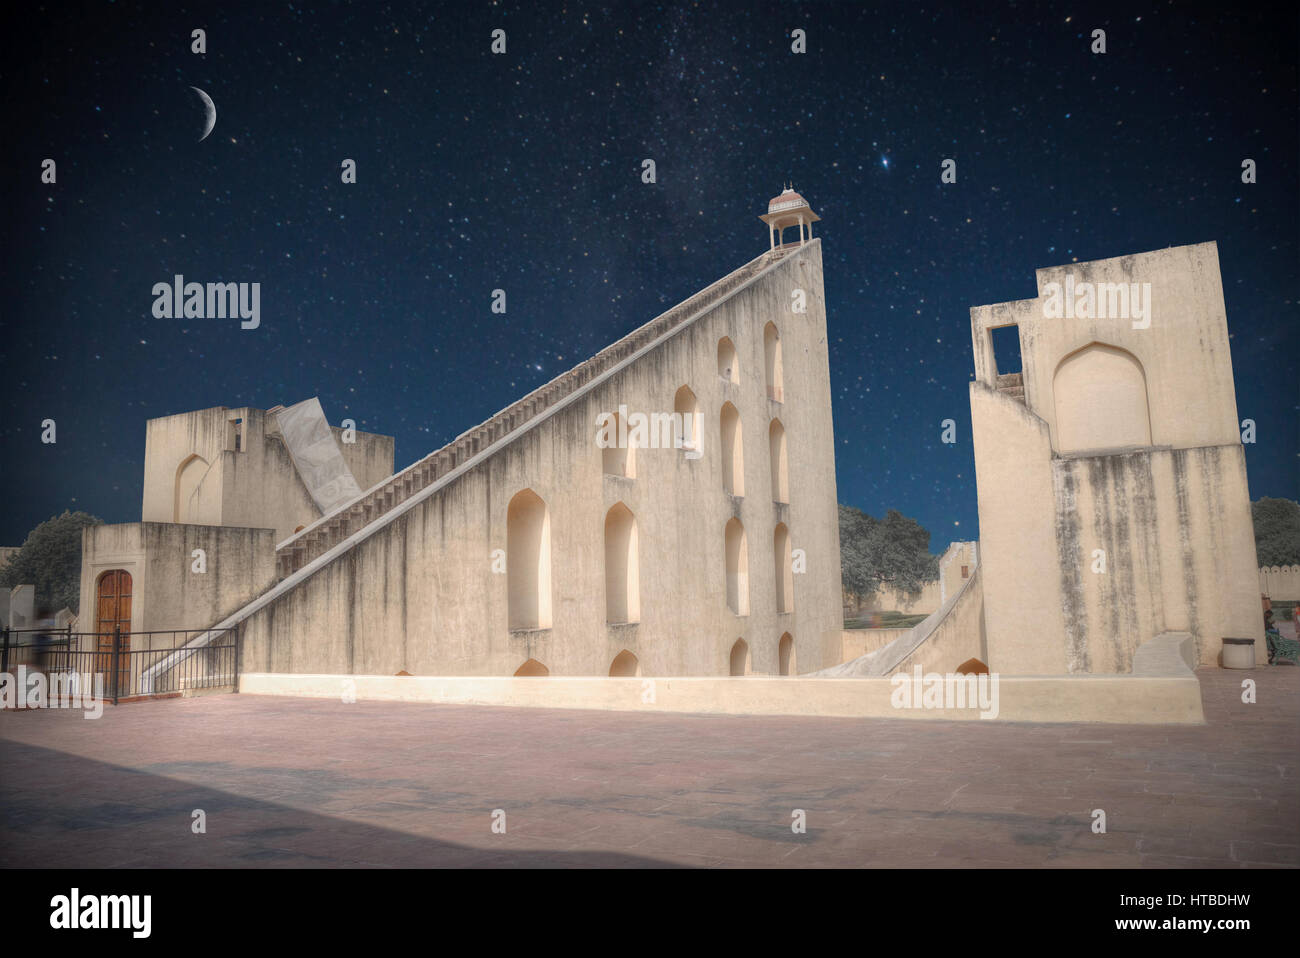 Jantar Mantar - Sternwarte, Stadt Jaipur. Nacht, Mond und Sterne leuchten. Stockfoto